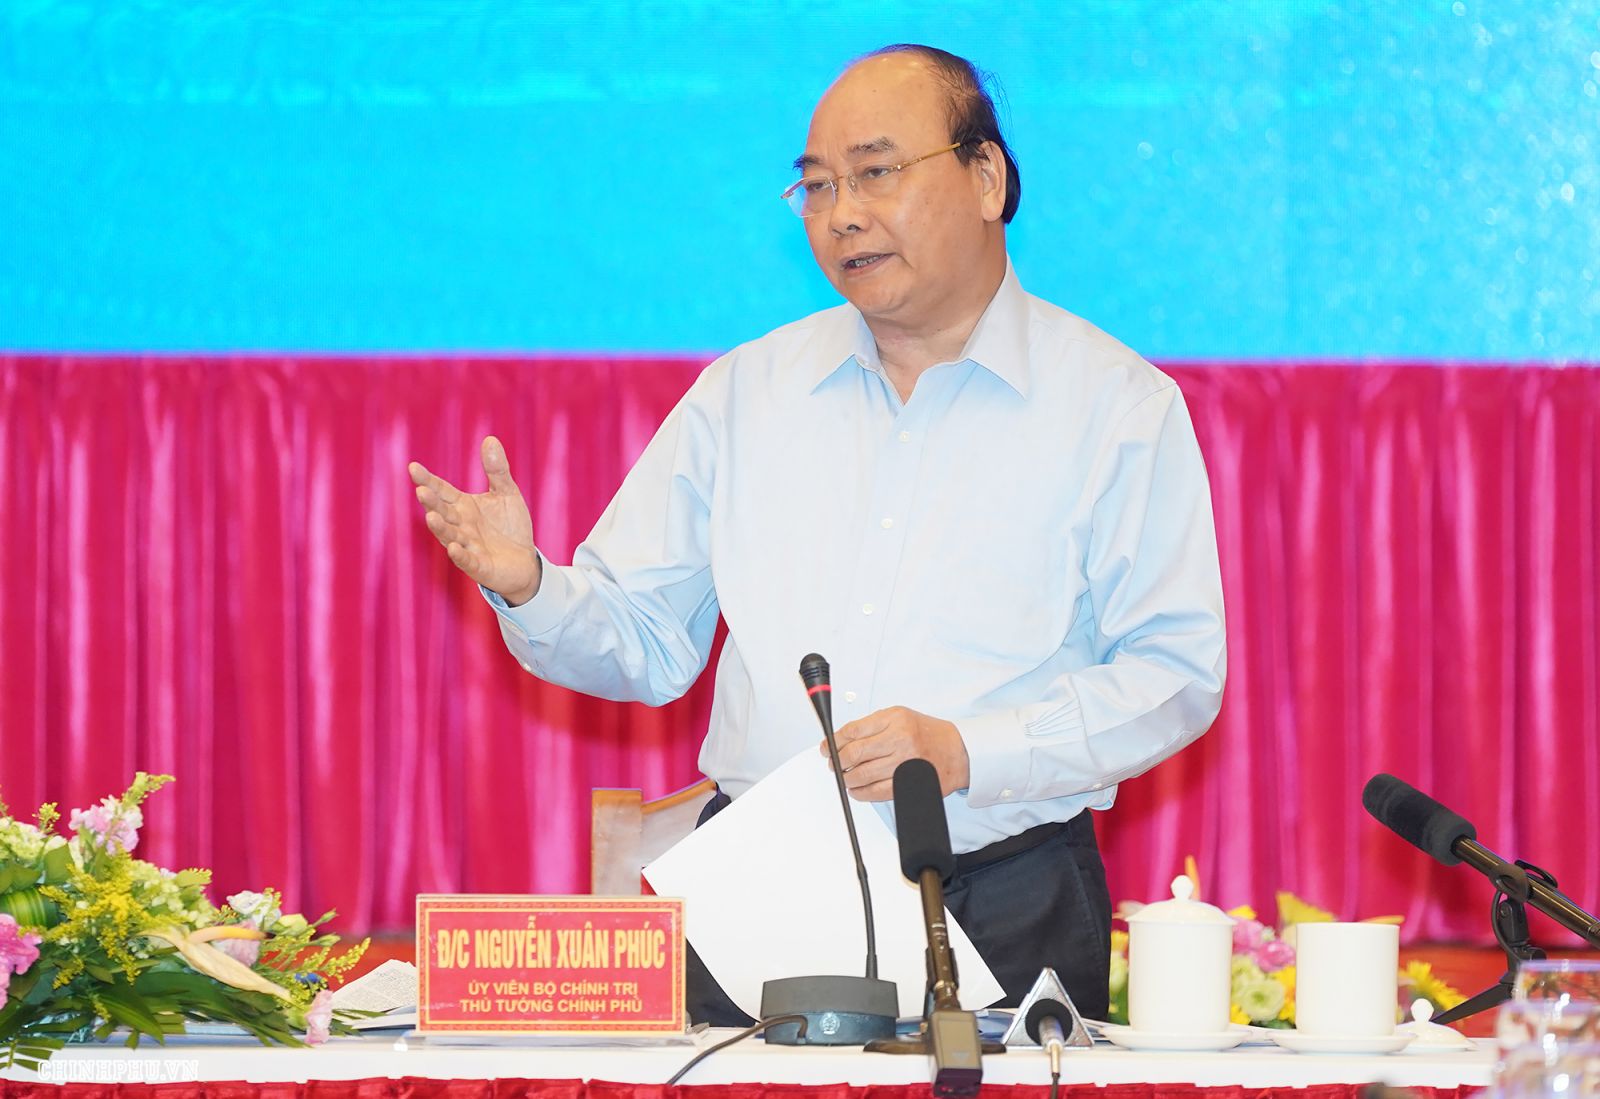 Thủ tướng Nguyễn Xuân Phúc phát biểu tại cuộc làm việc - Ảnh: VGP/Quang Hiếu